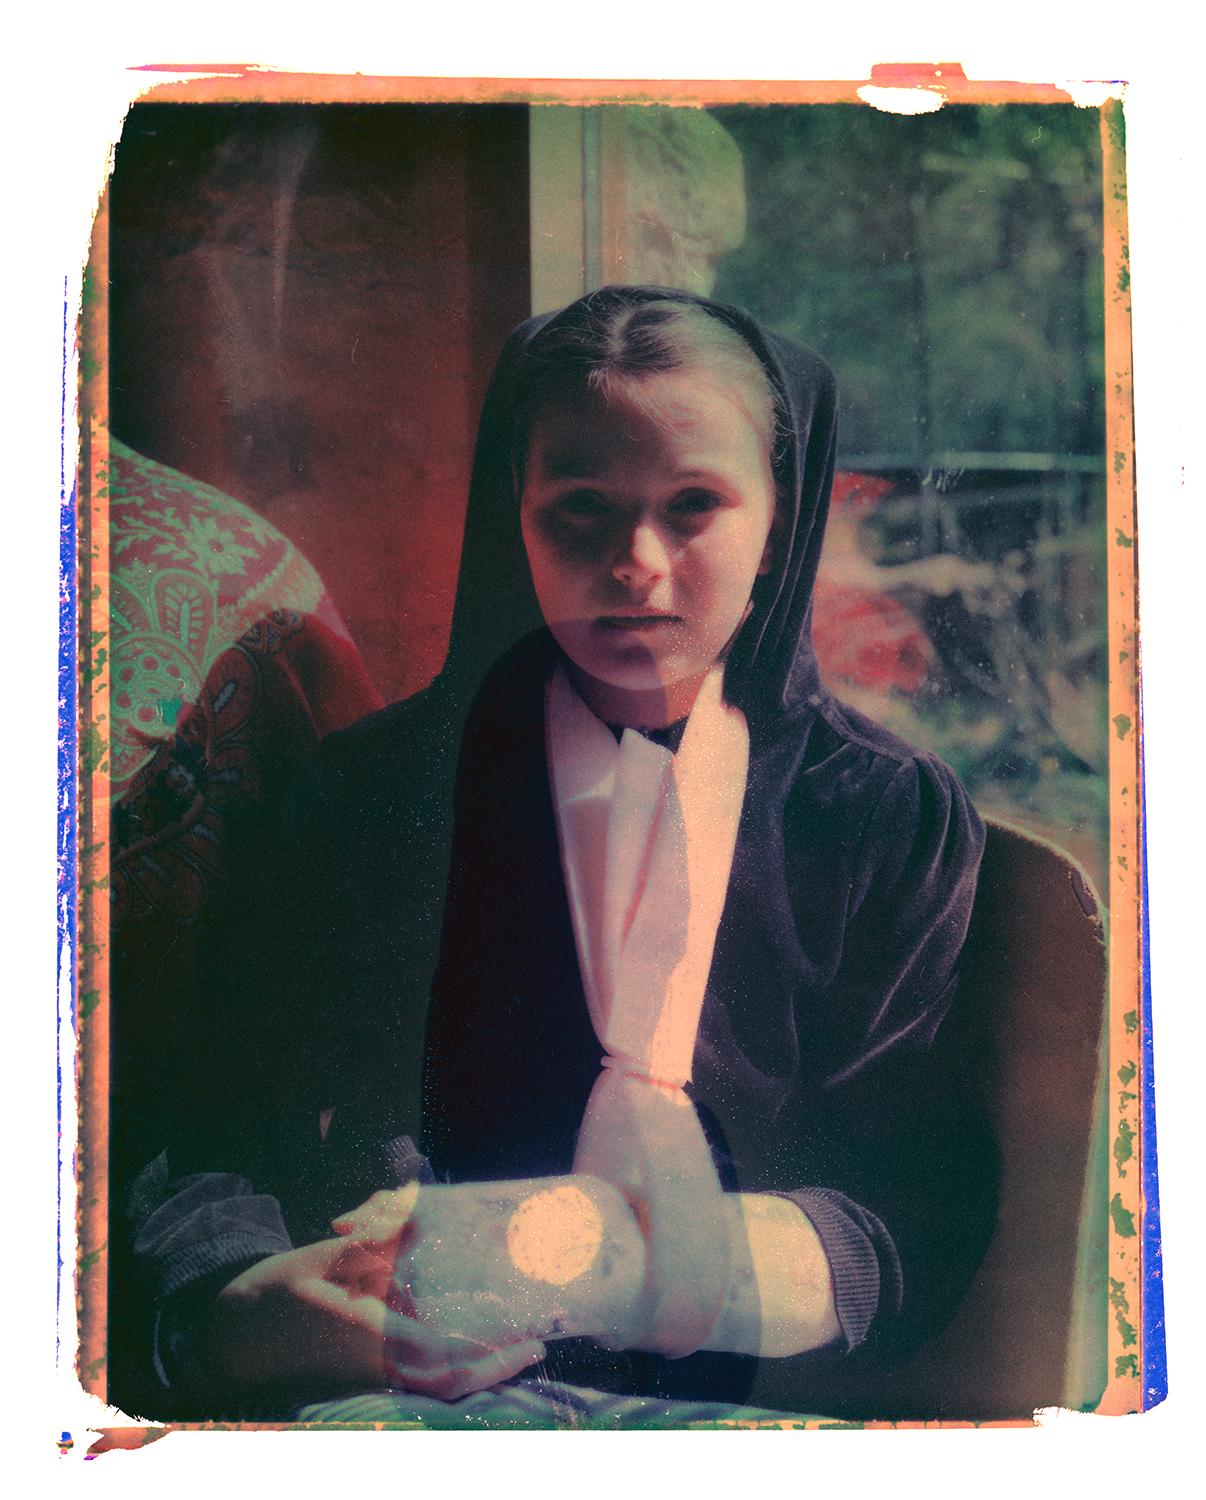 Cristina Fontsare Portrait Photograph – Gaell mit gebrochenem Arm - Zeitgenössisch, Polaroid, Fotografie, Kindheit, abstrakt